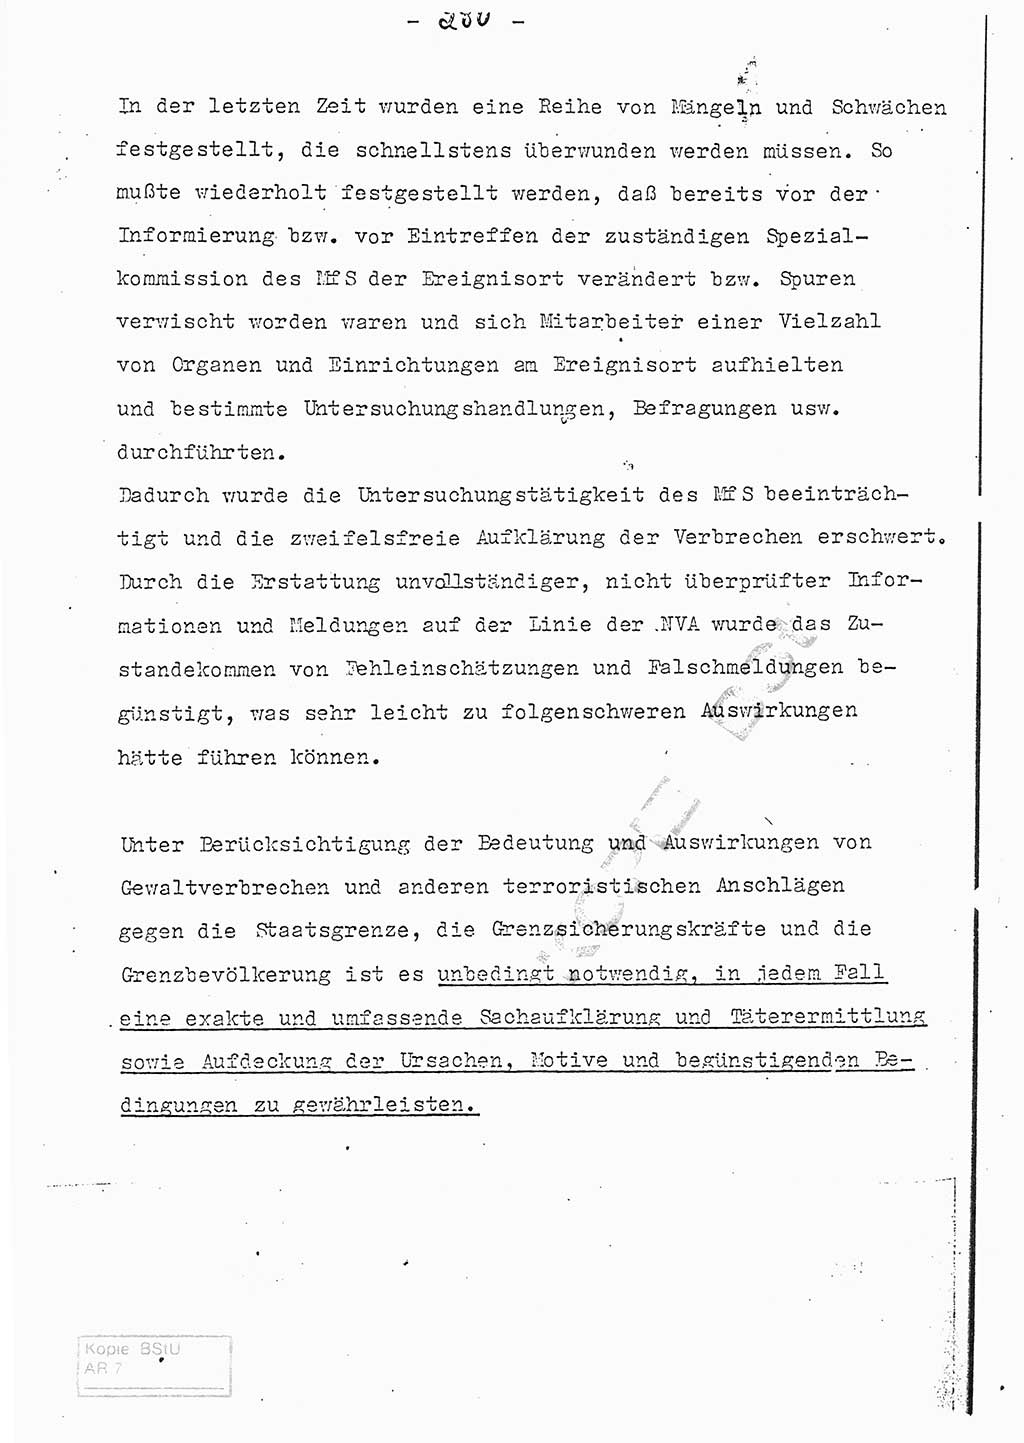 Referat (Entwurf) des Genossen Minister (Generaloberst Erich Mielke) auf der Dienstkonferenz 1972, Ministerium für Staatssicherheit (MfS) [Deutsche Demokratische Republik (DDR)], Der Minister, Geheime Verschlußsache (GVS) 008-150/72, Berlin 25.2.1972, Seite 280 (Ref. Entw. DK MfS DDR Min. GVS 008-150/72 1972, S. 280)